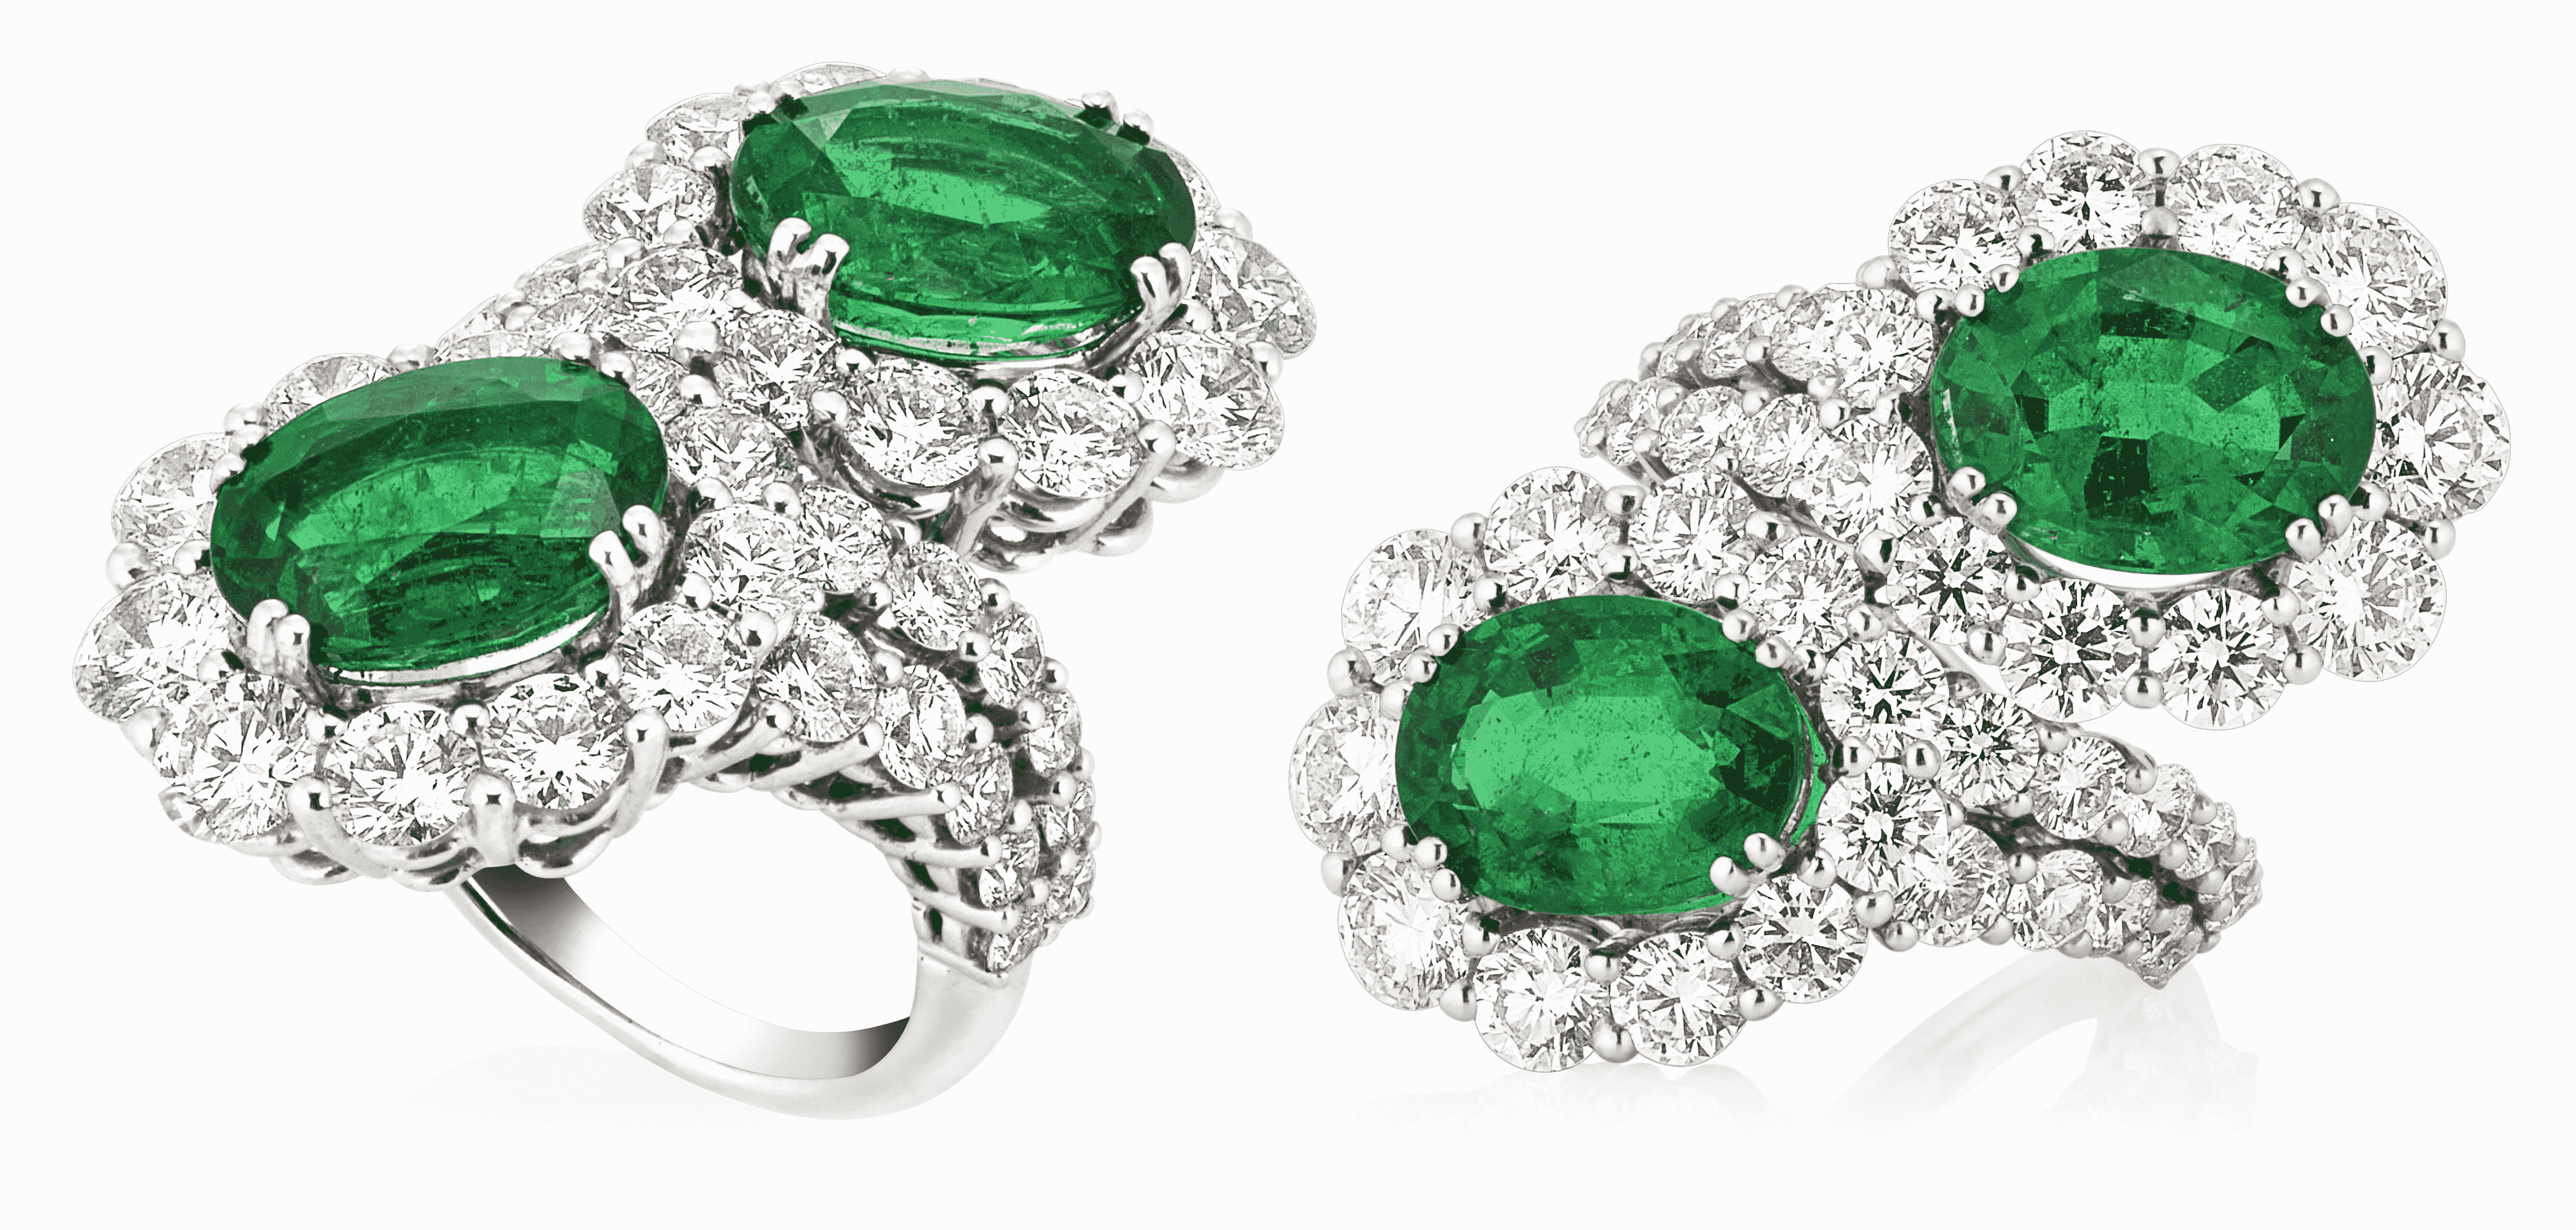 Picchiotti Green Emerald Ring